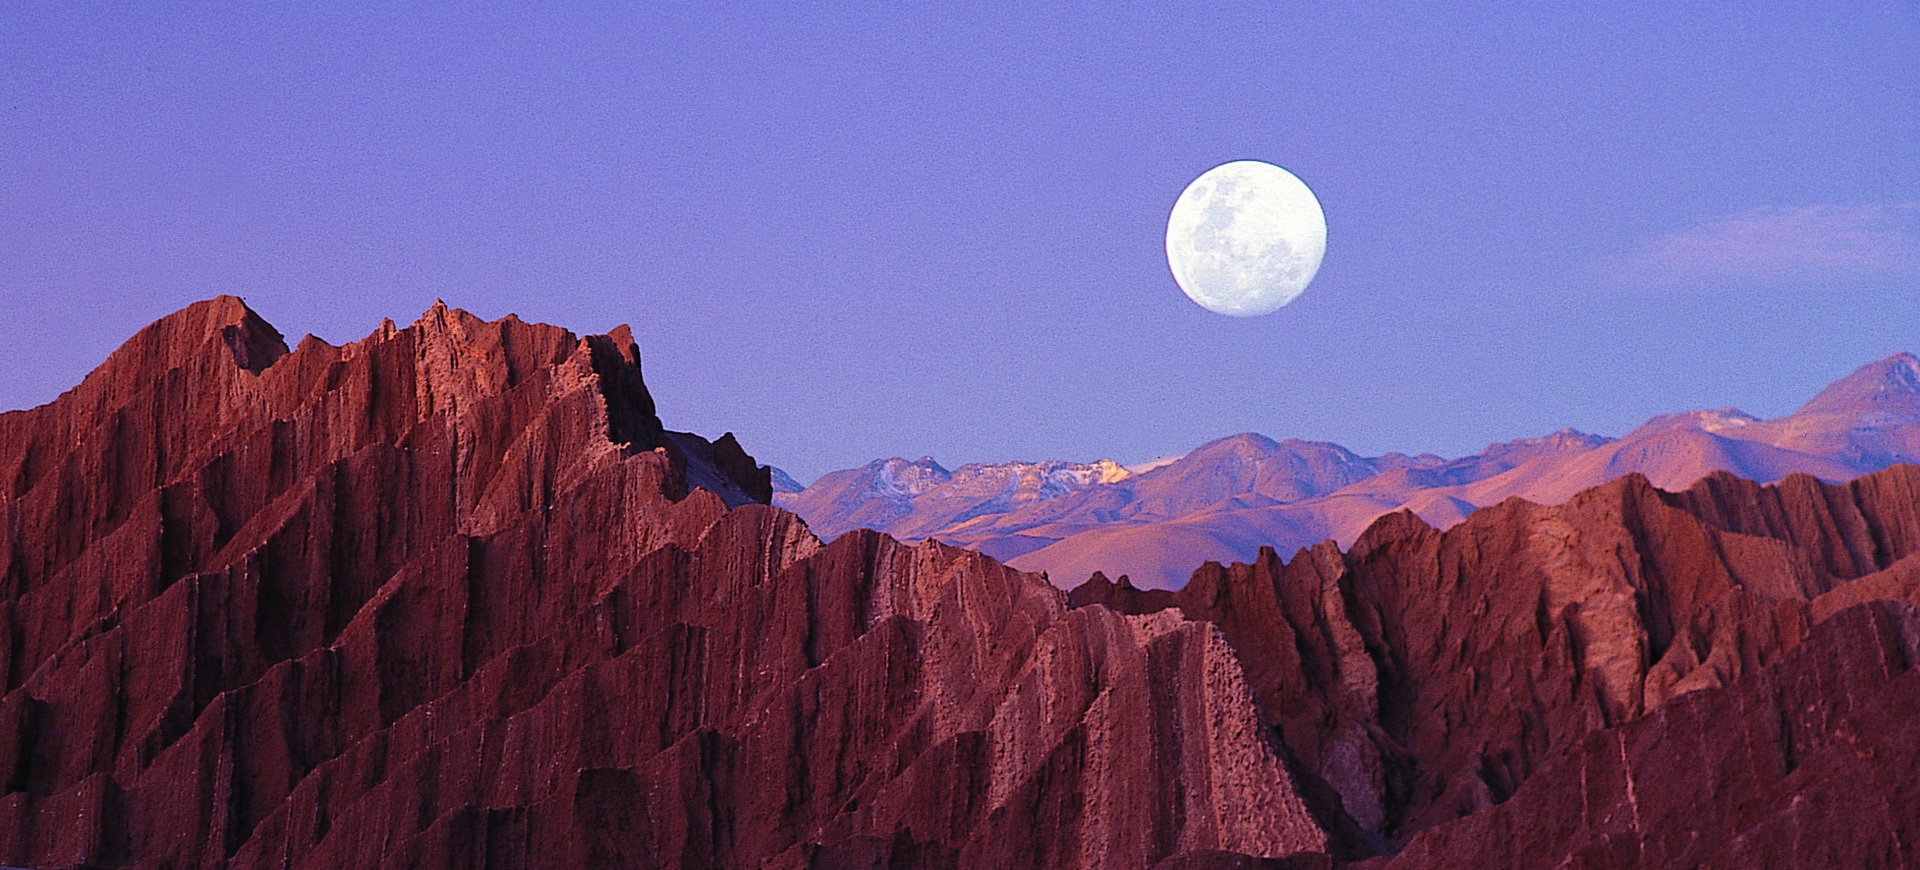 San Pedro de Atacama au Chili, ses églises et son immense Désert